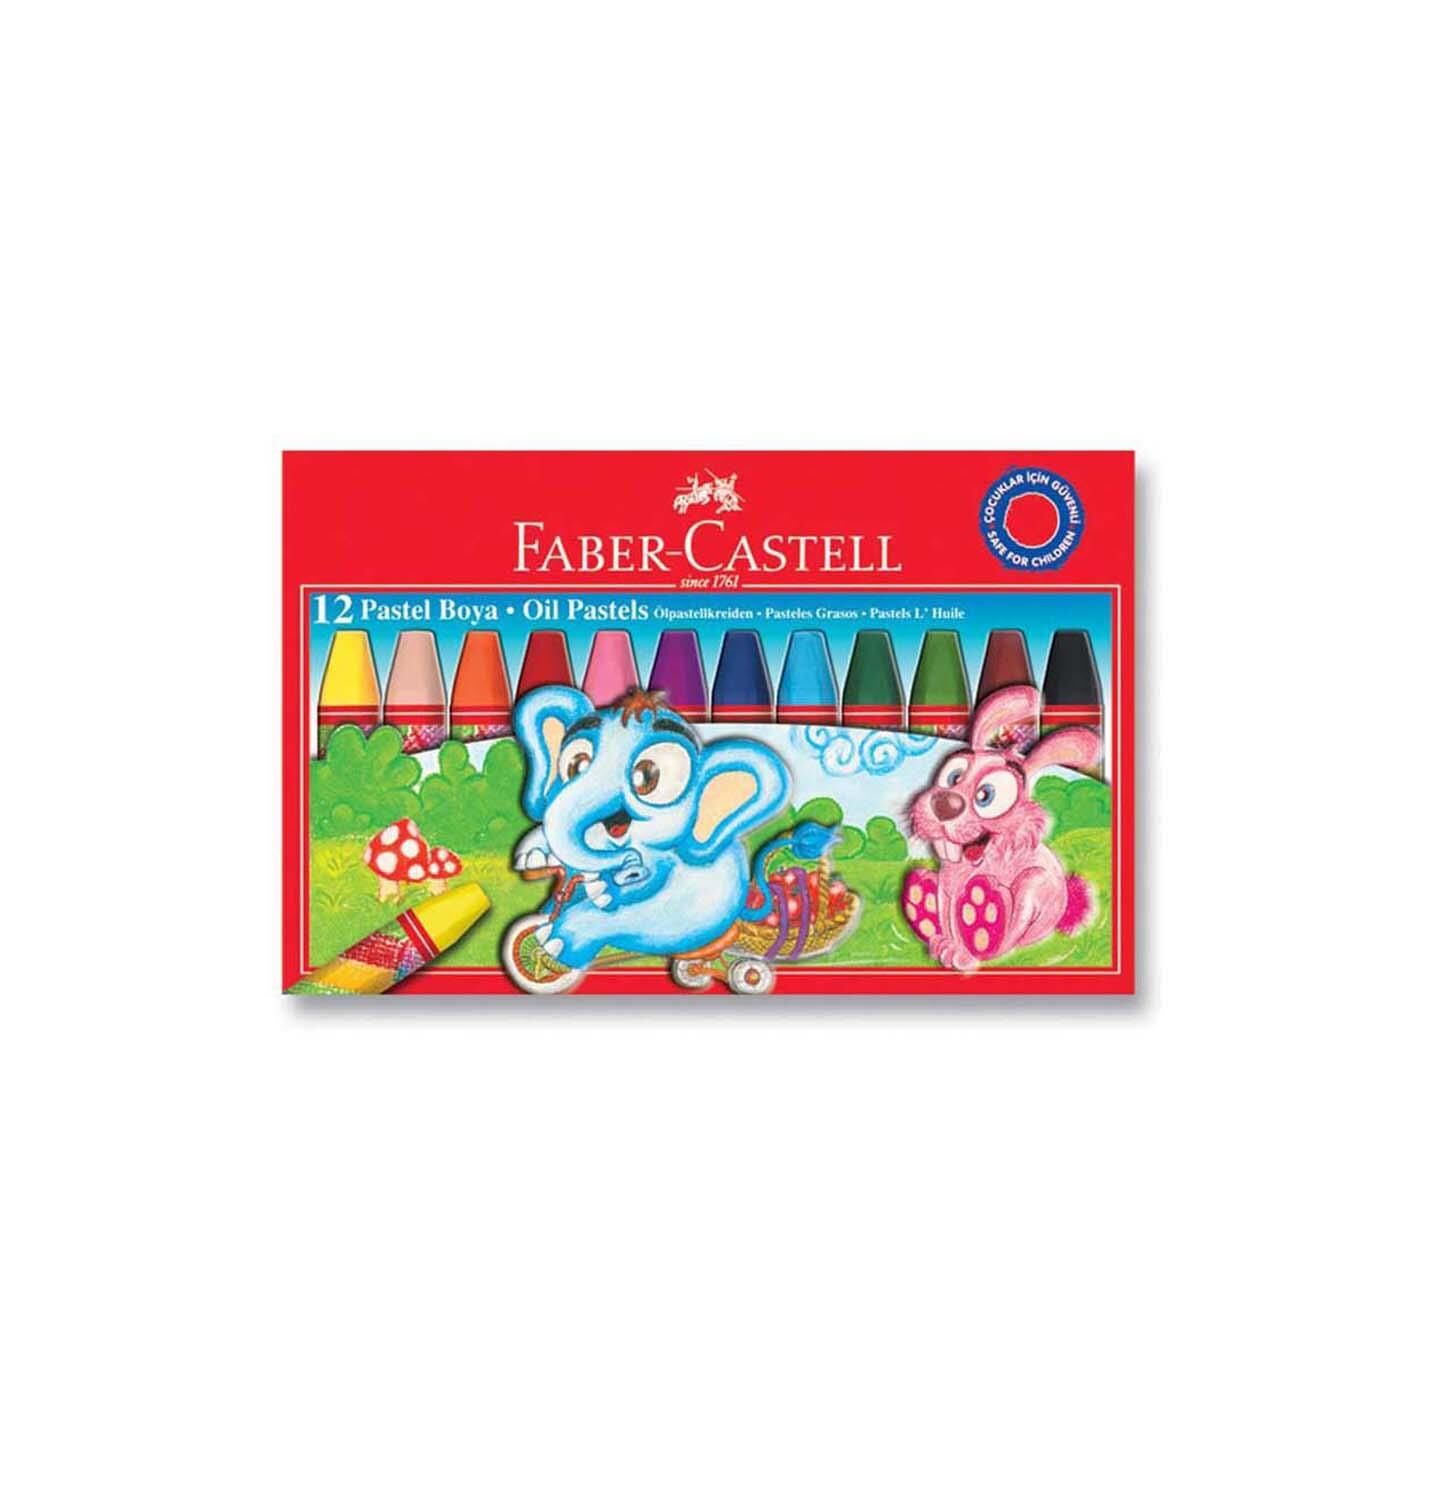 Faber-Castell Pastel Boya Karton Kutu 12 Renk